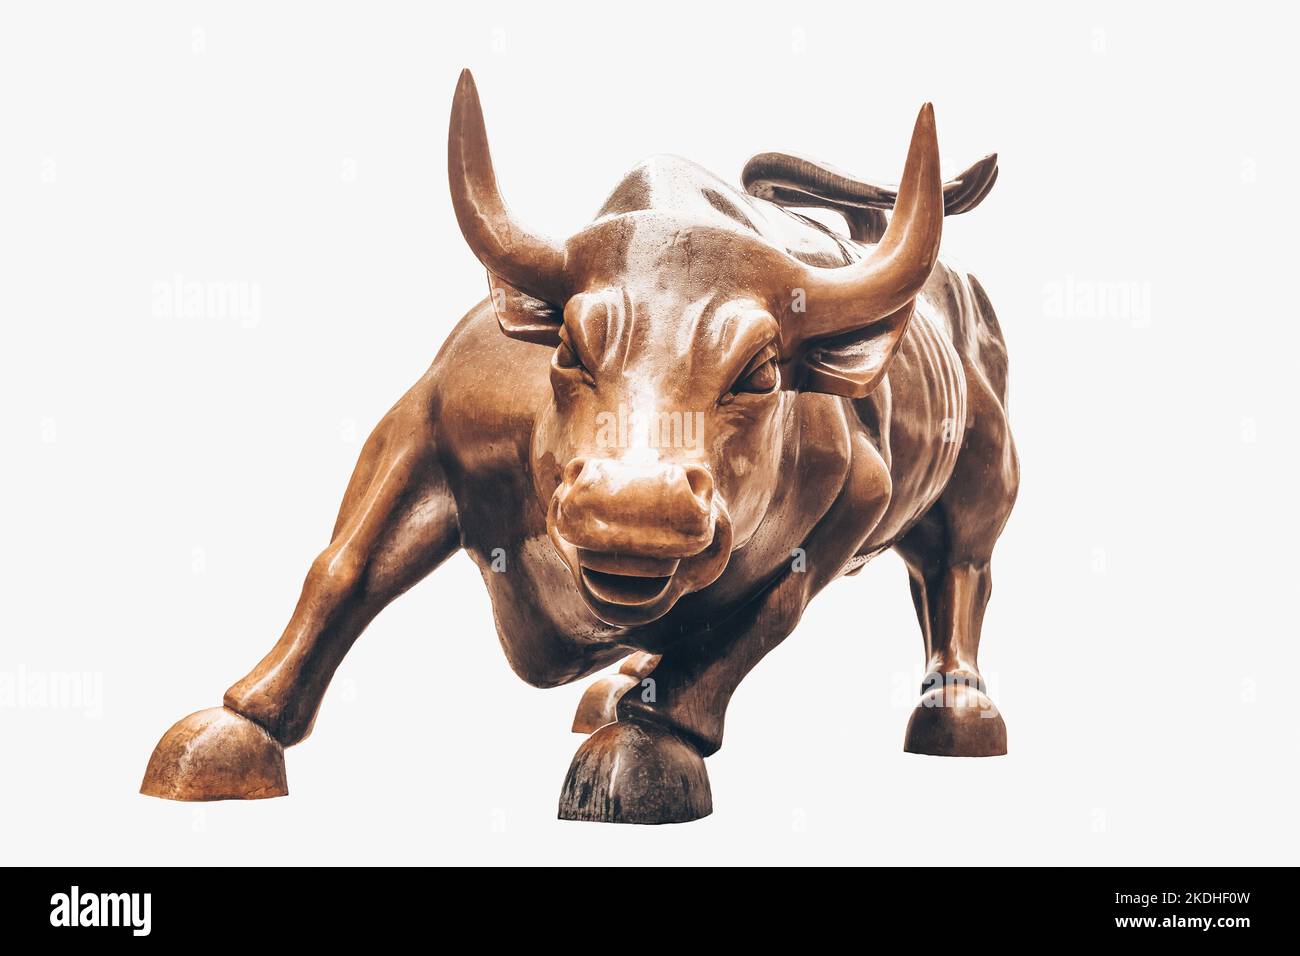 Charging Bull isoliert auf weißem Hintergrund. Bulle steht für aggressiven finanziellen Optimismus und Wohlstand, Stockfoto